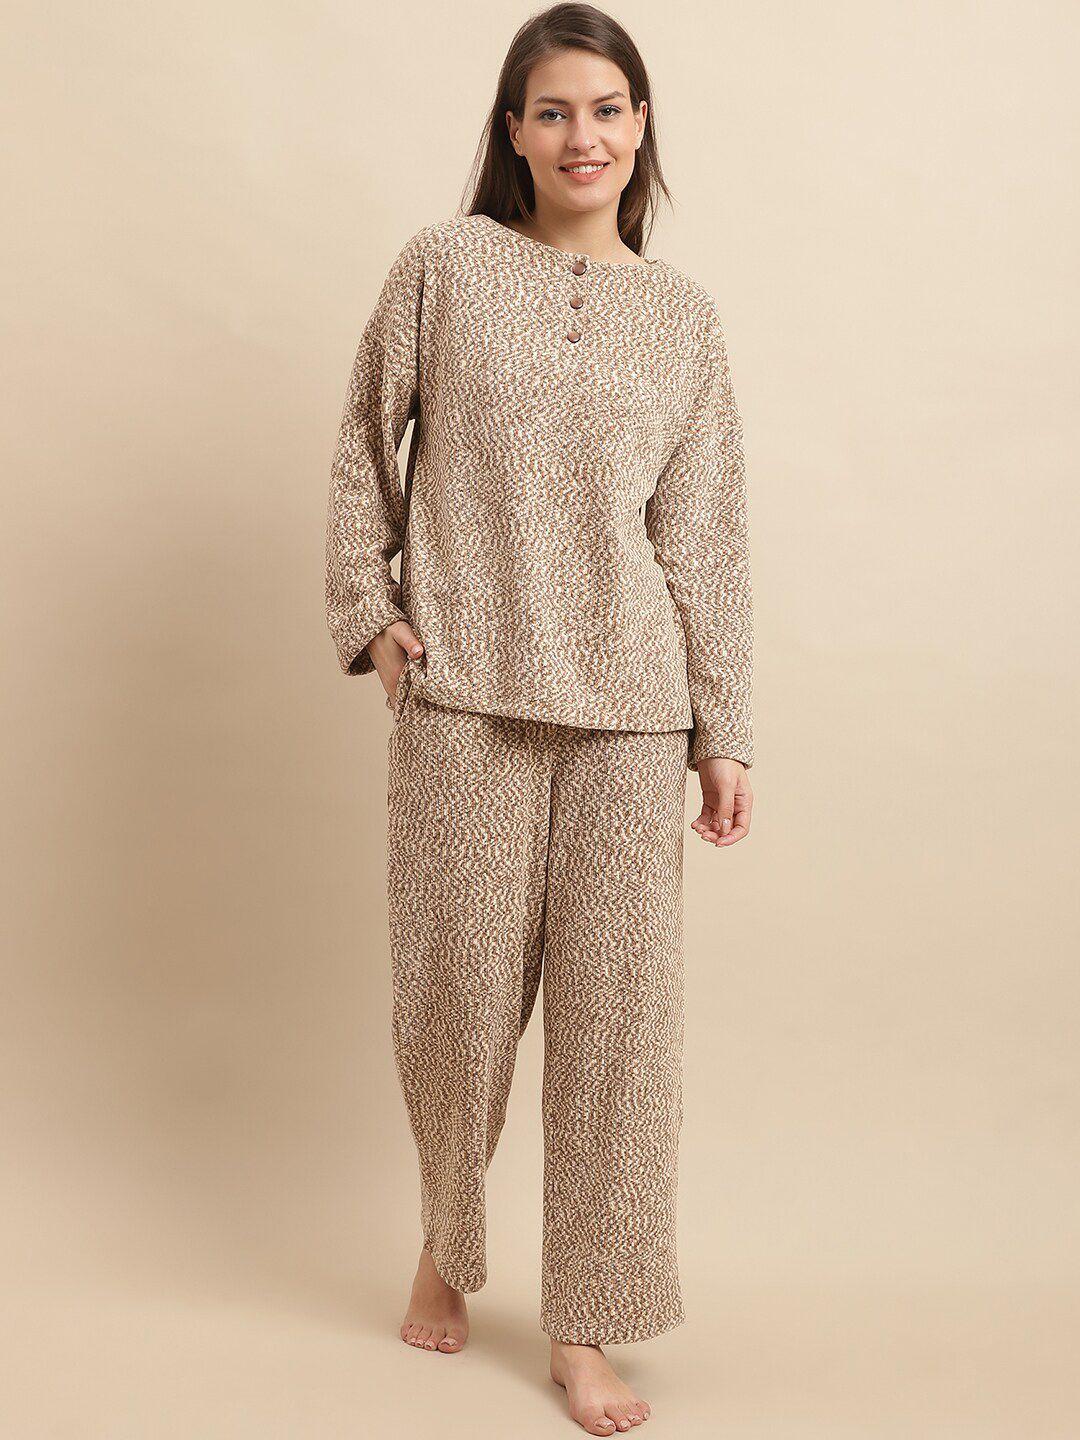 kanvin printed top and pyjamas night suit